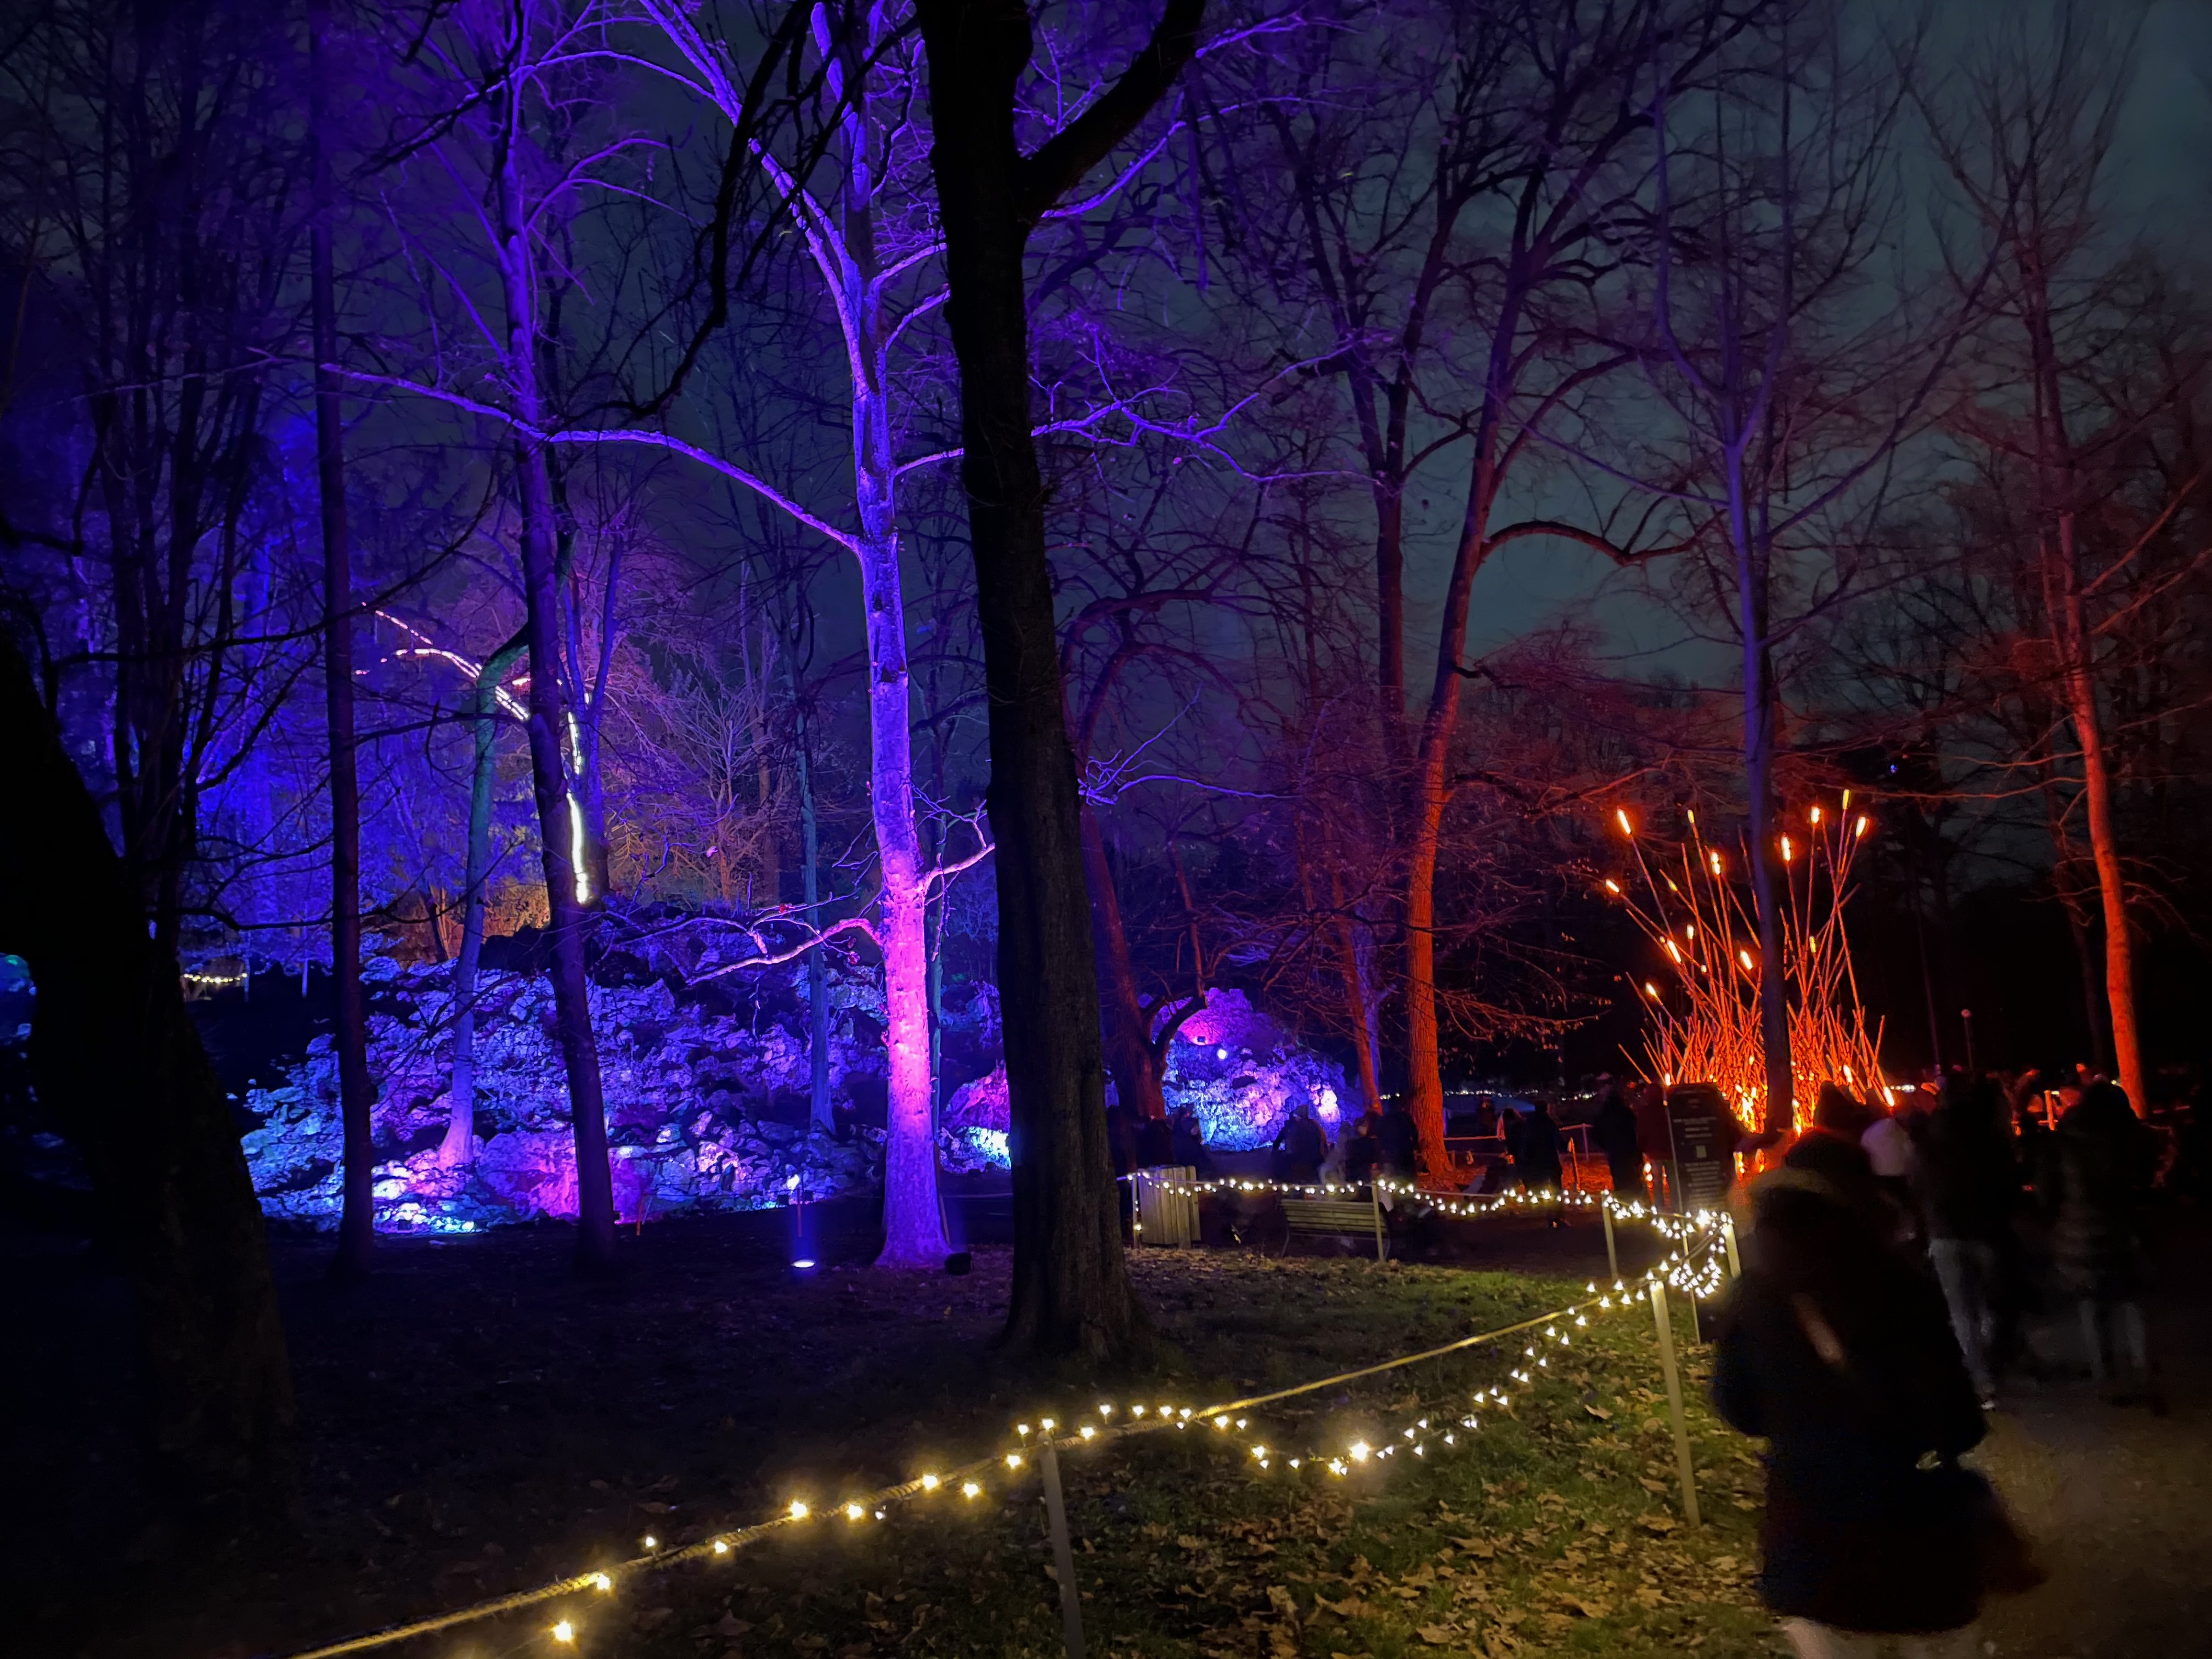 Un panorama da Trame di luce, al parco di Monza, ripreso al buio con iPhone 12